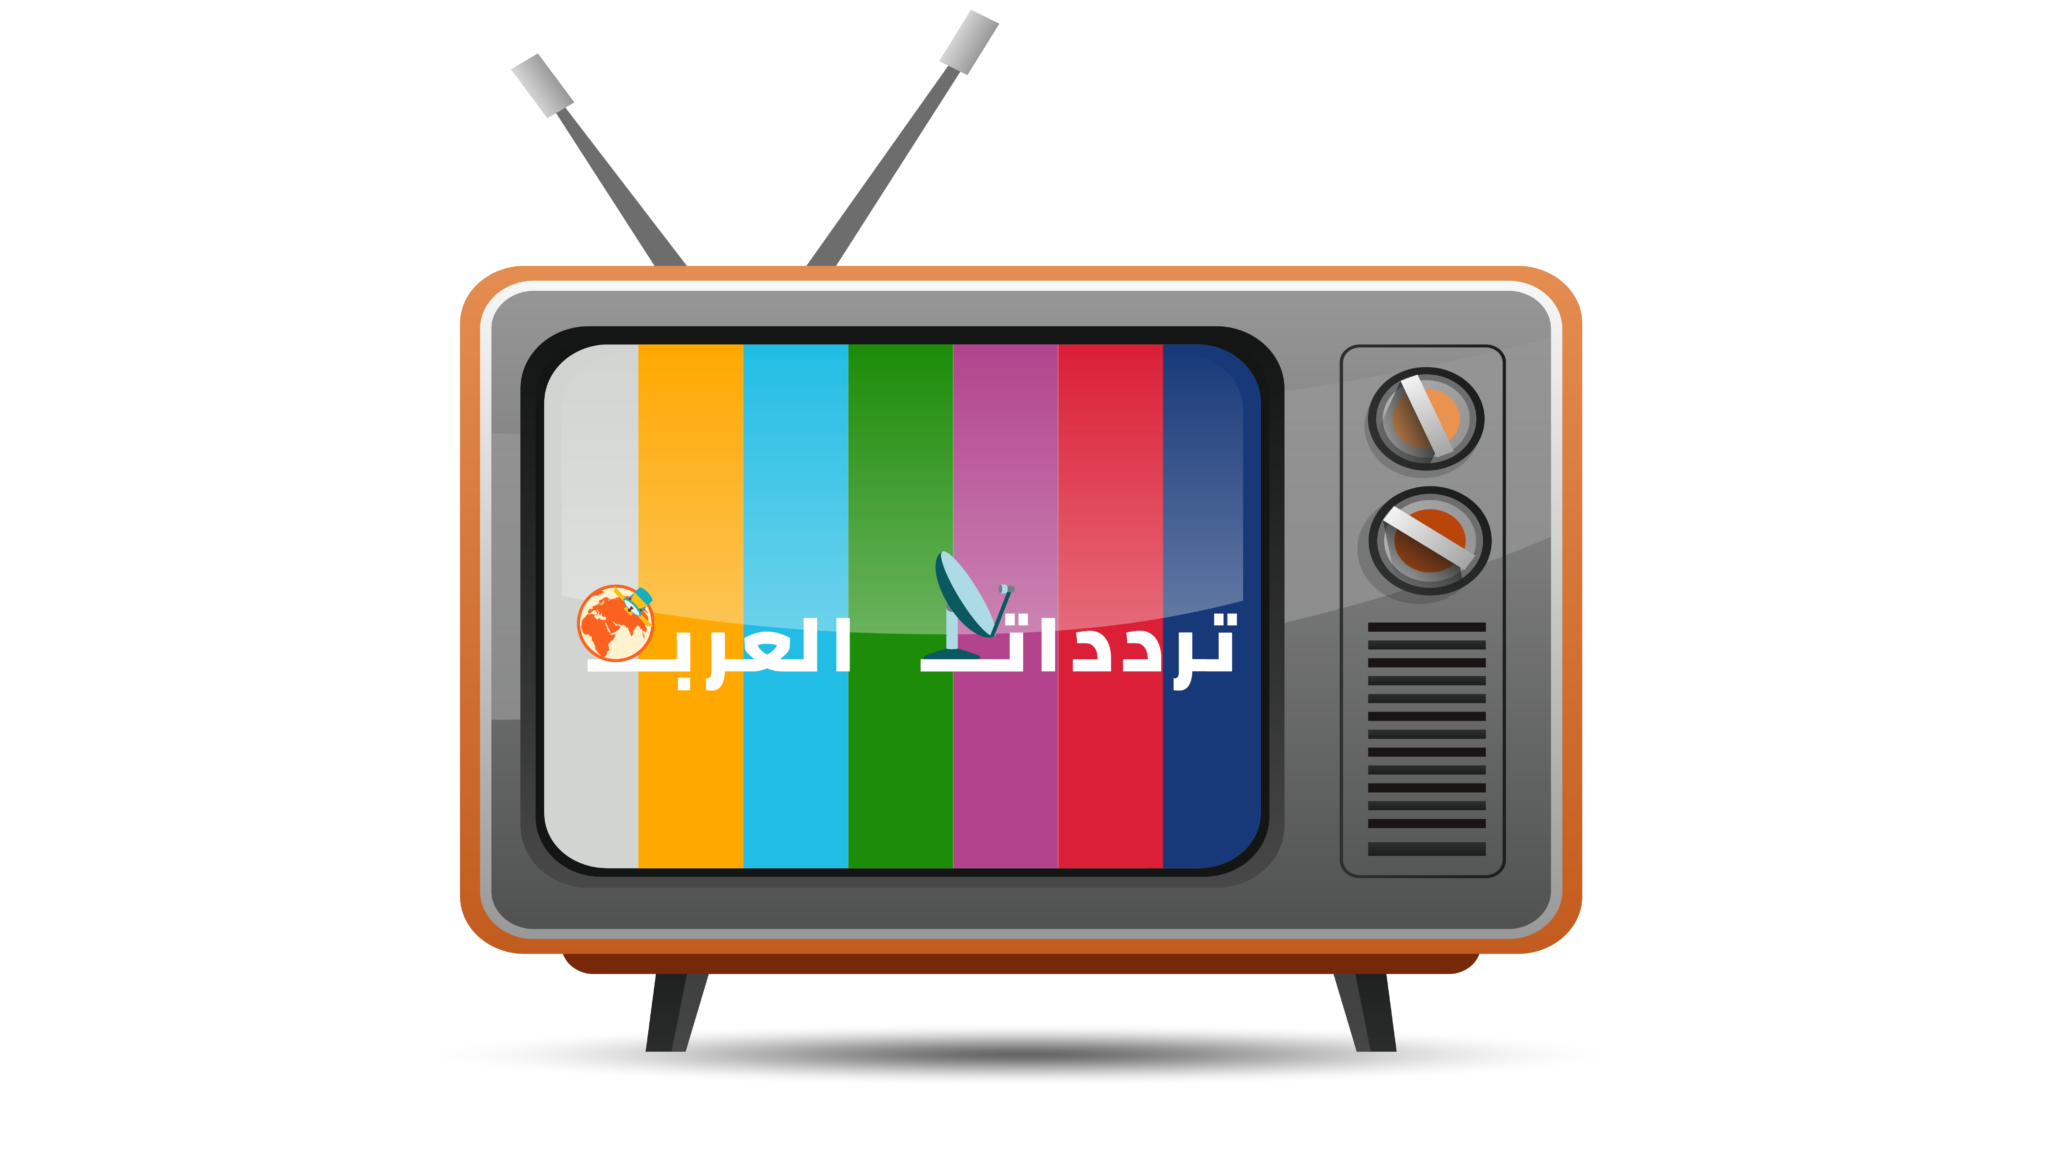 تردد قناة ديزني بالعربية على النايل سات ترددات العرب